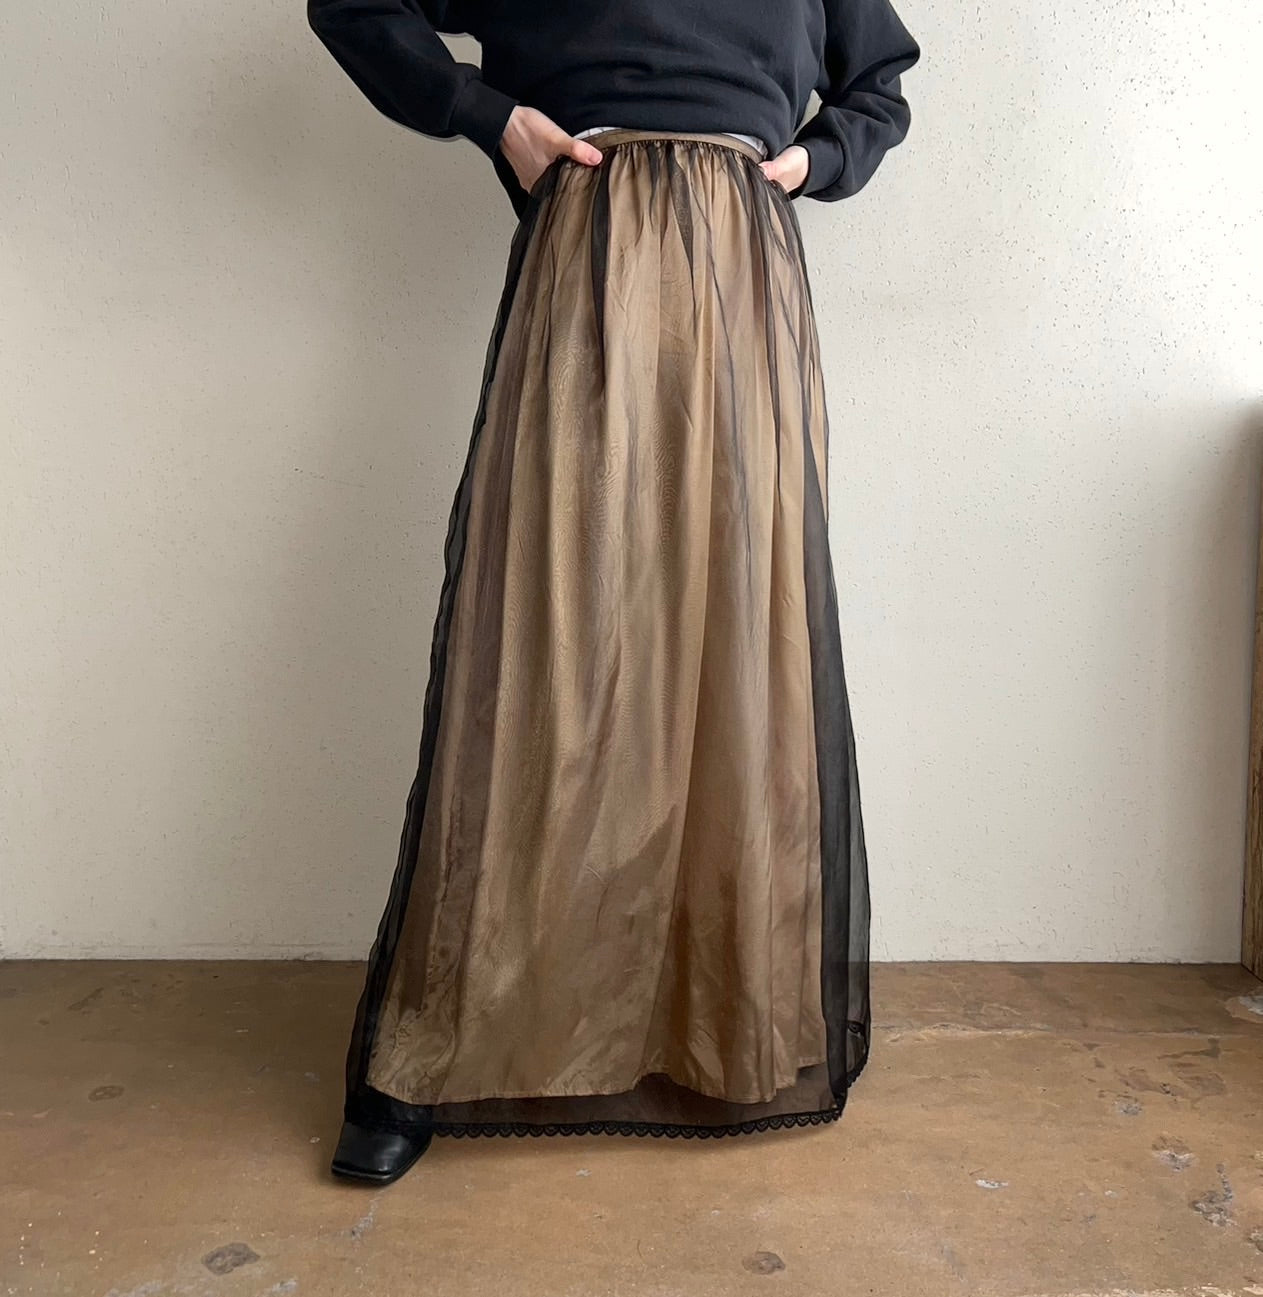 90s Sheer Skirt Made in USA